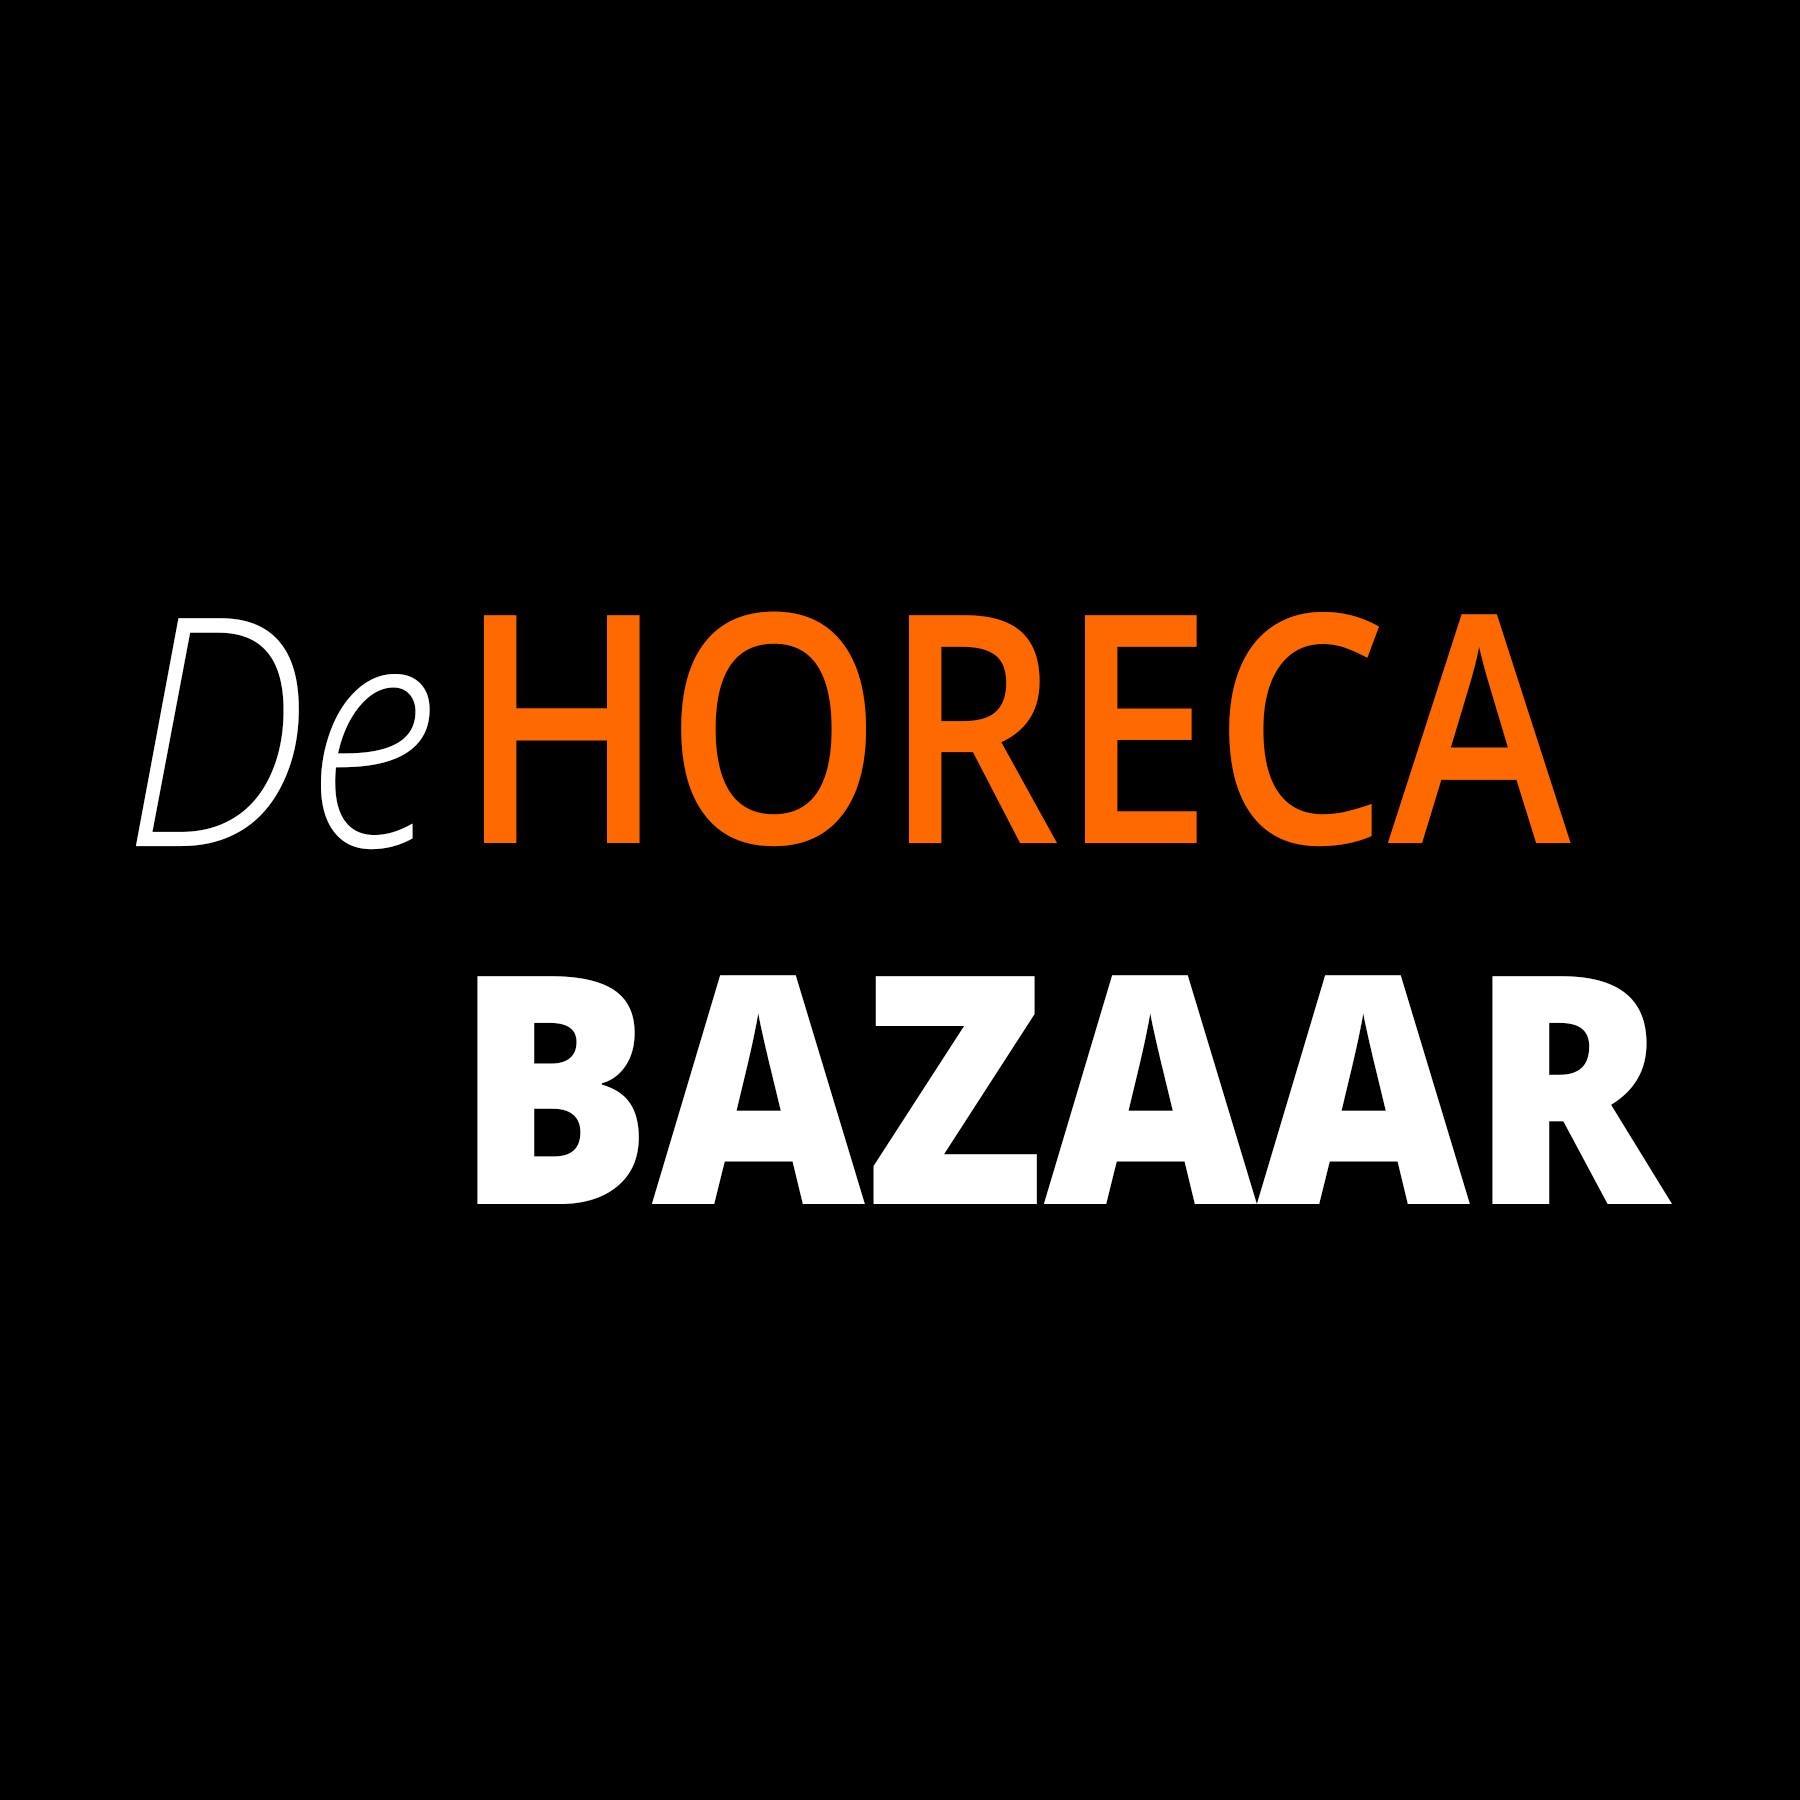 De Horeca Bazaar reviews, beoordelingen en ervaringen